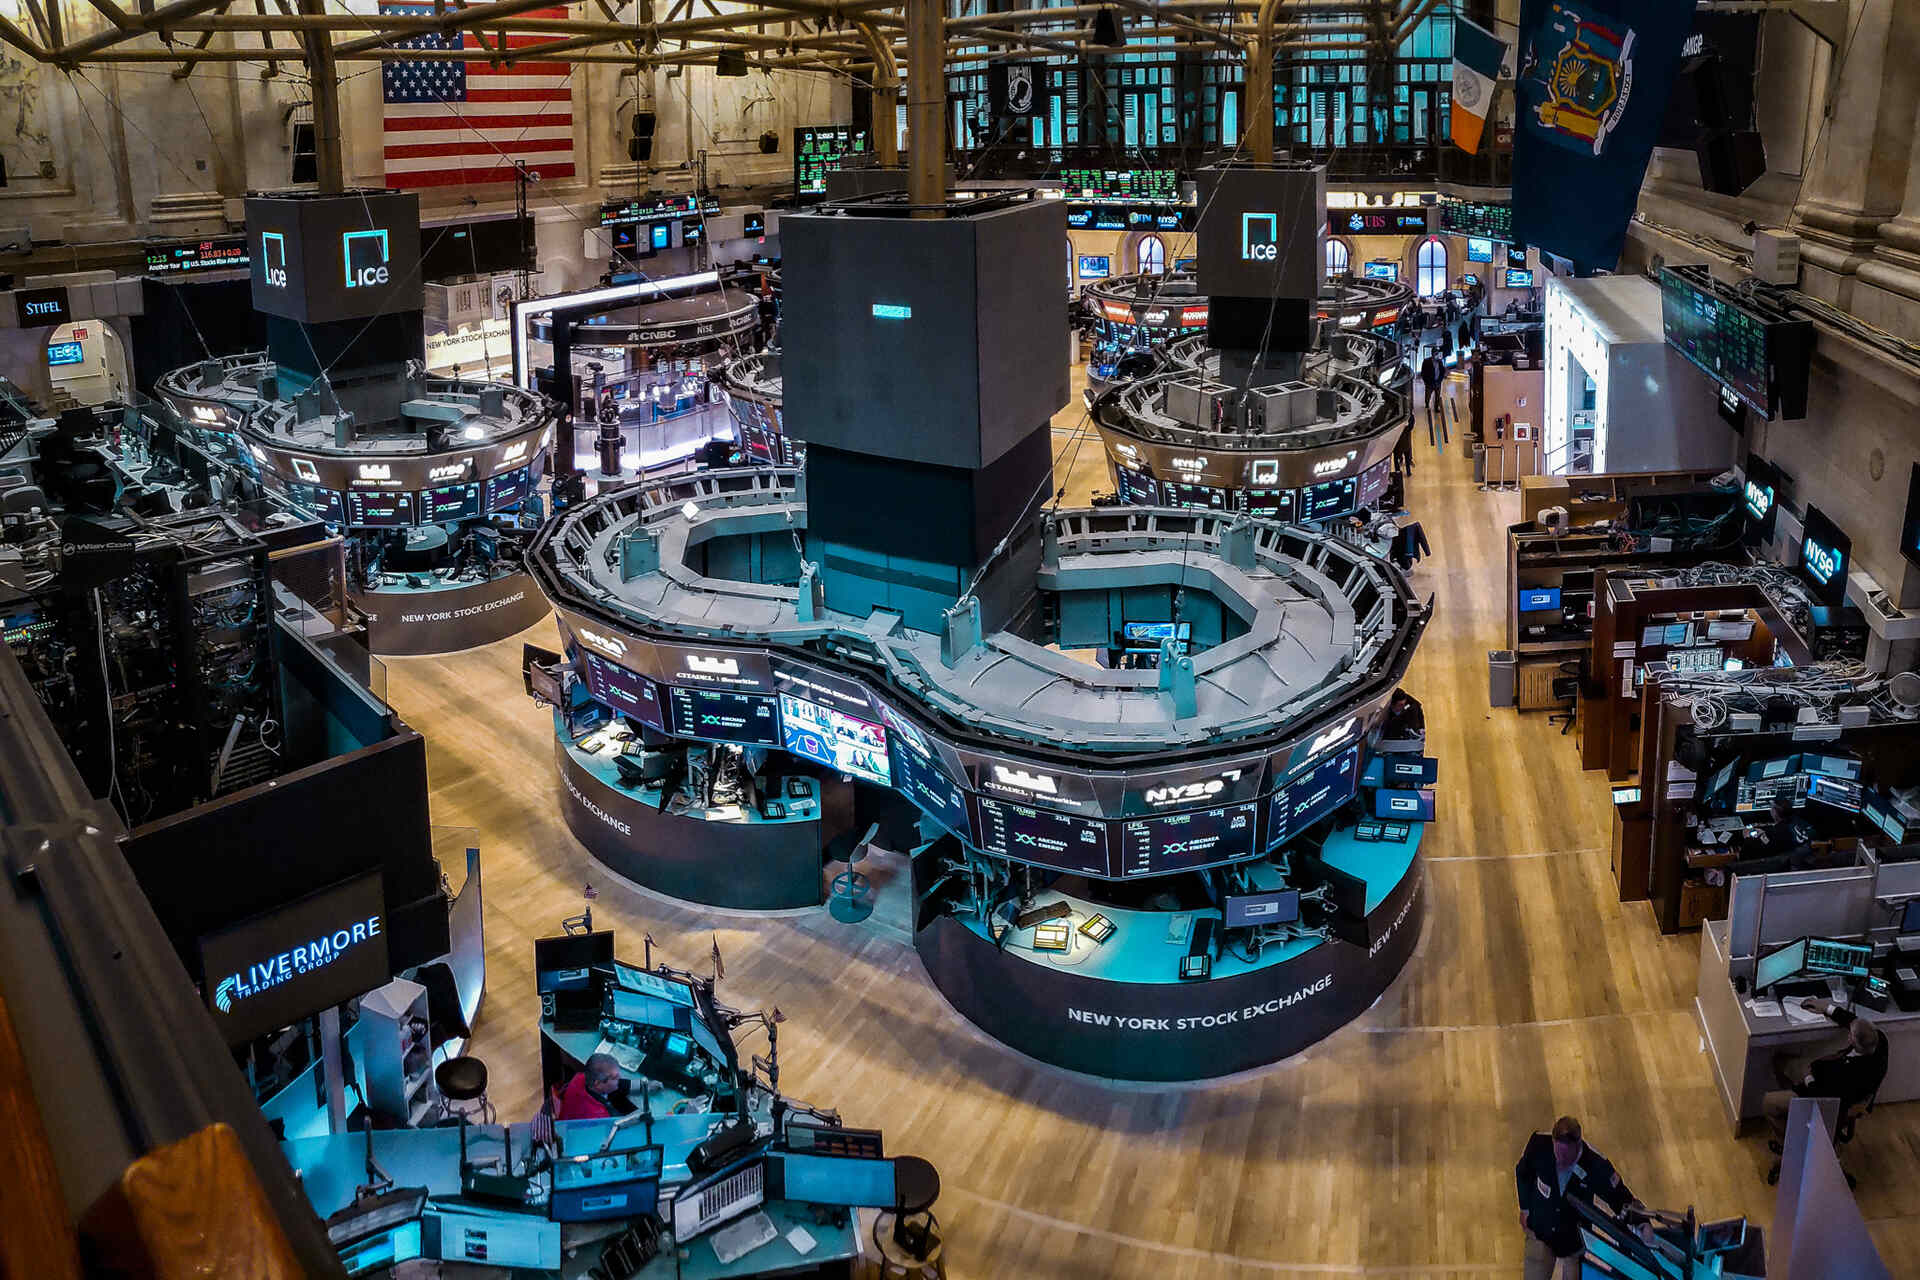 ETF: ชั้นการซื้อขายของตลาดหลักทรัพย์นิวยอร์ก (ตลาดหลักทรัพย์นิวยอร์กหรือ NYSE ในตัวย่อ) อิงตามวอลล์สตรีทอันโด่งดังและก่อตั้งขึ้นเมื่อปี พ.ศ. 1817